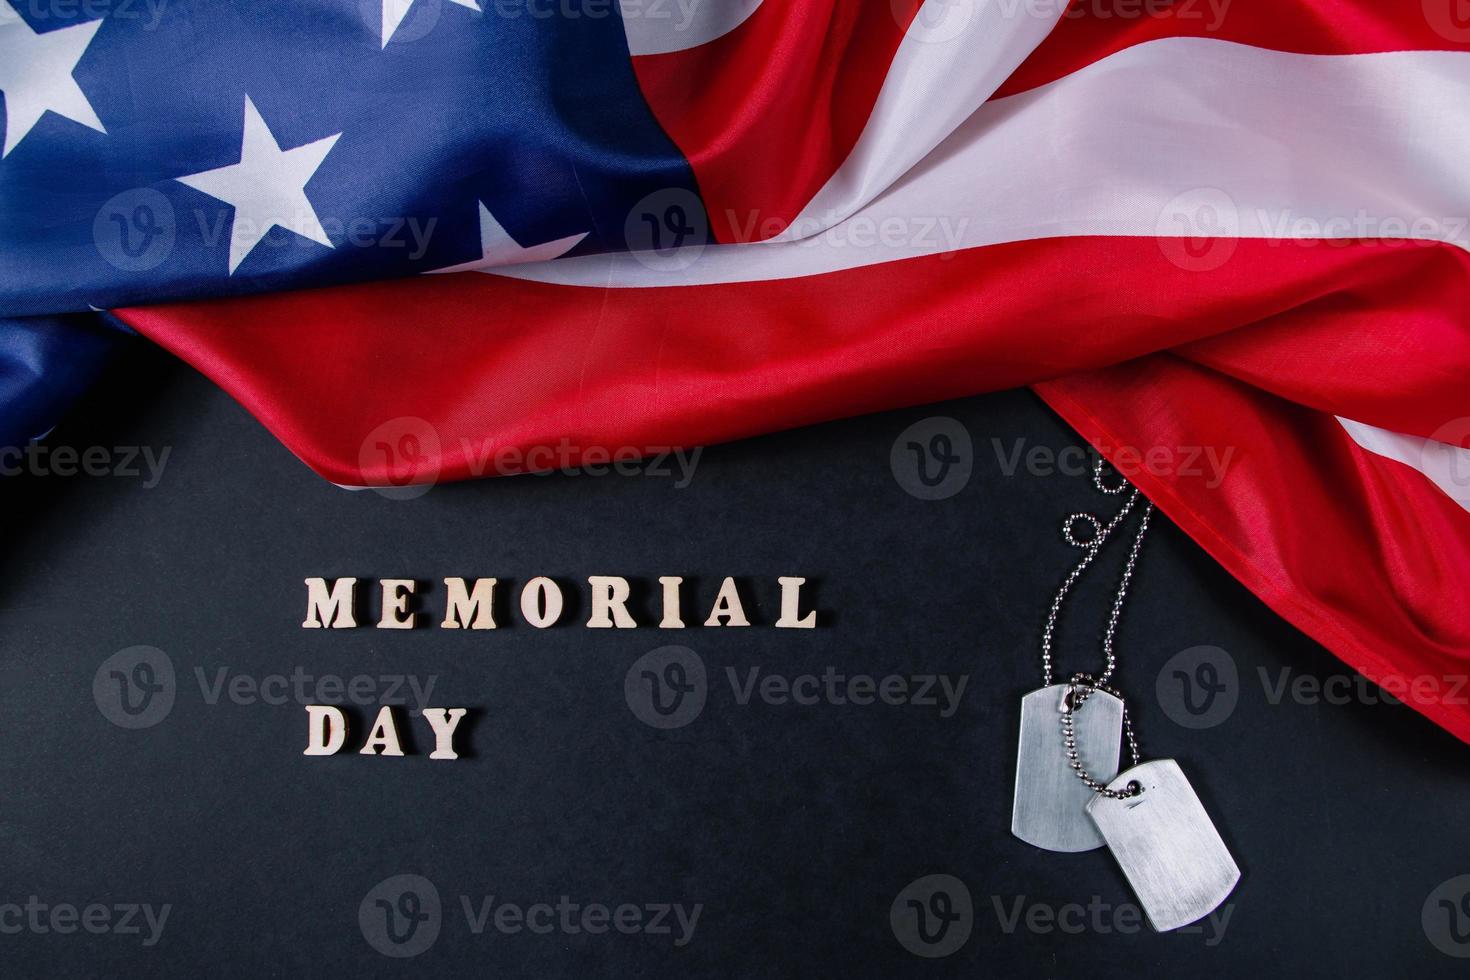 concepto del día conmemorativo. bandera americana y etiquetas de perro militares sobre fondo negro. recordar y honrar. foto